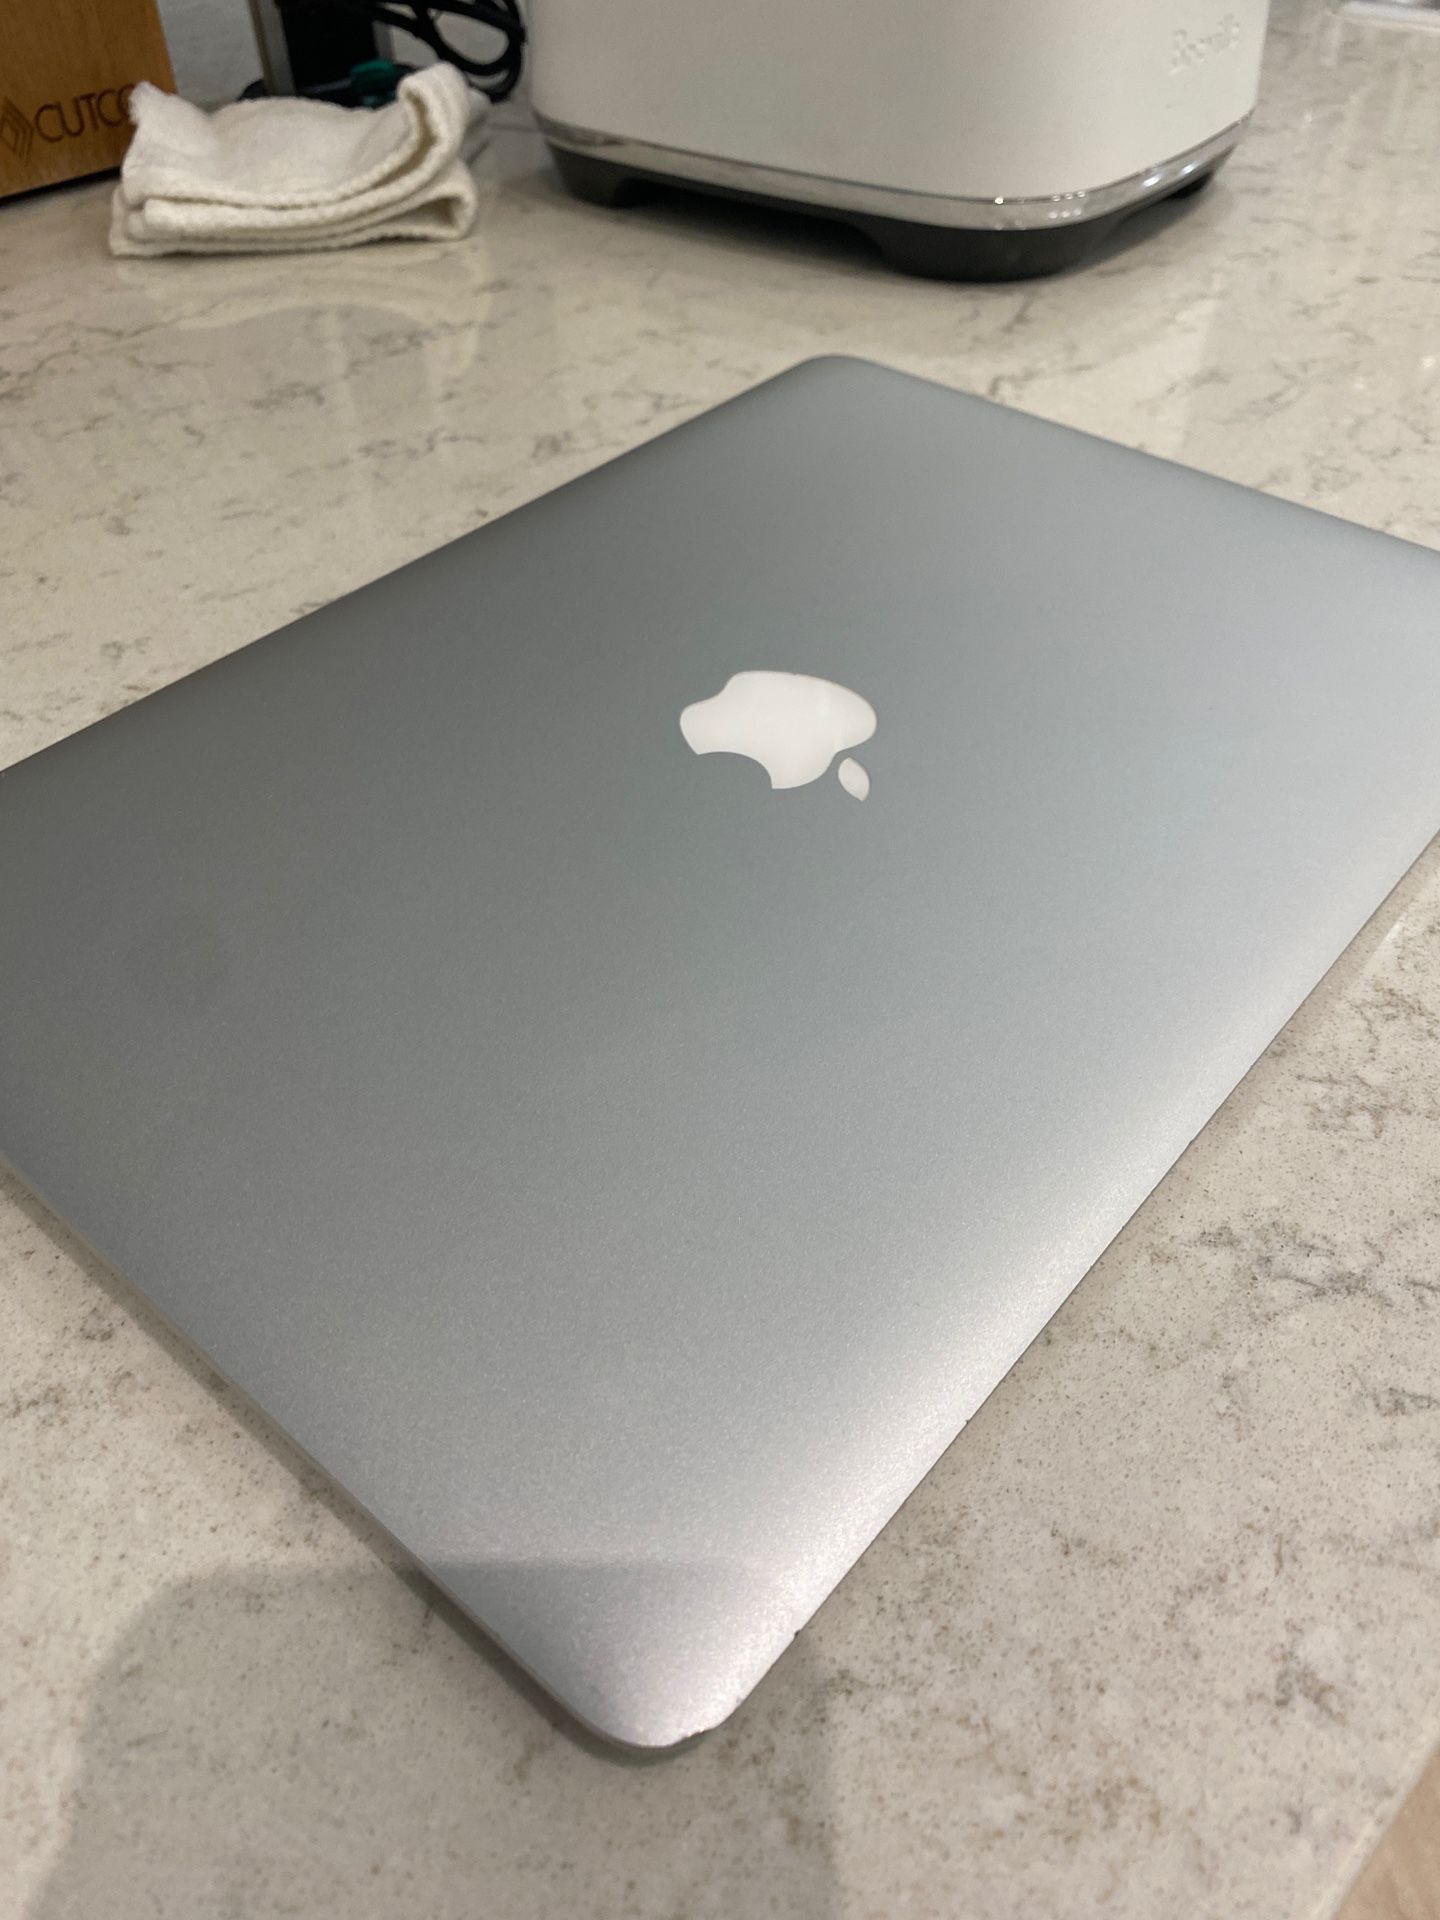 Apple MacBook Air 13 in